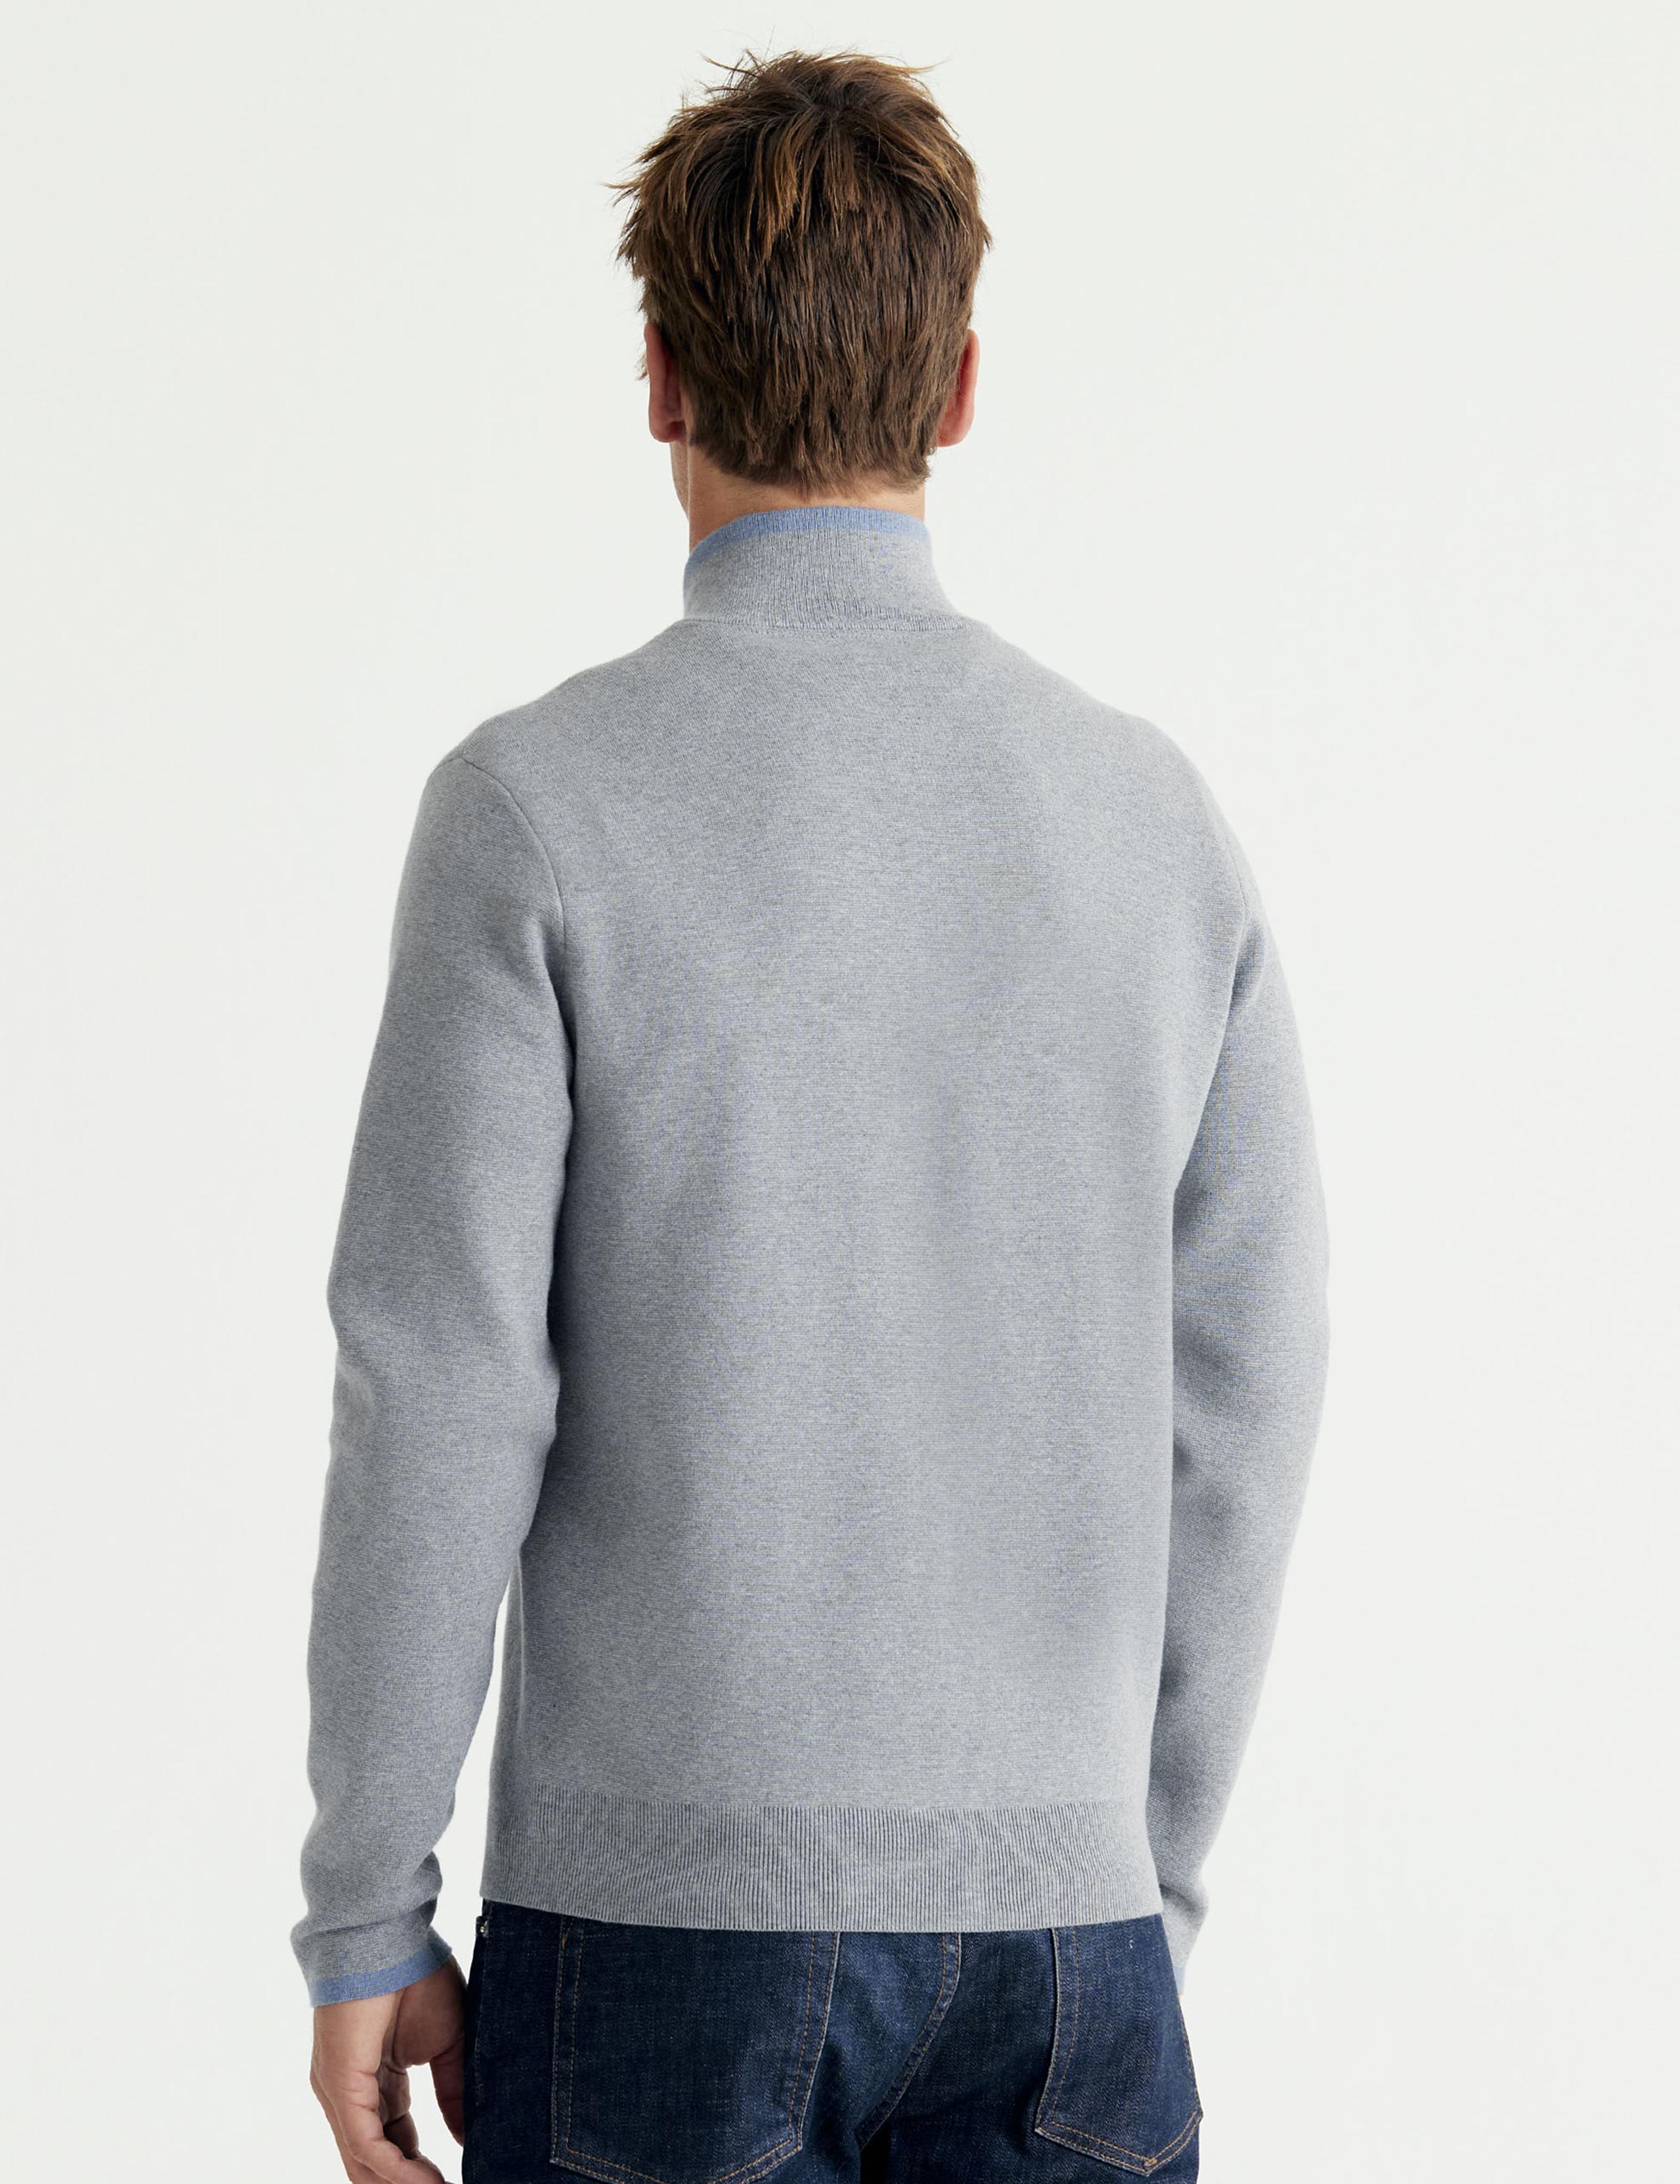 Men wearing Jemison Full-Zip Sweater